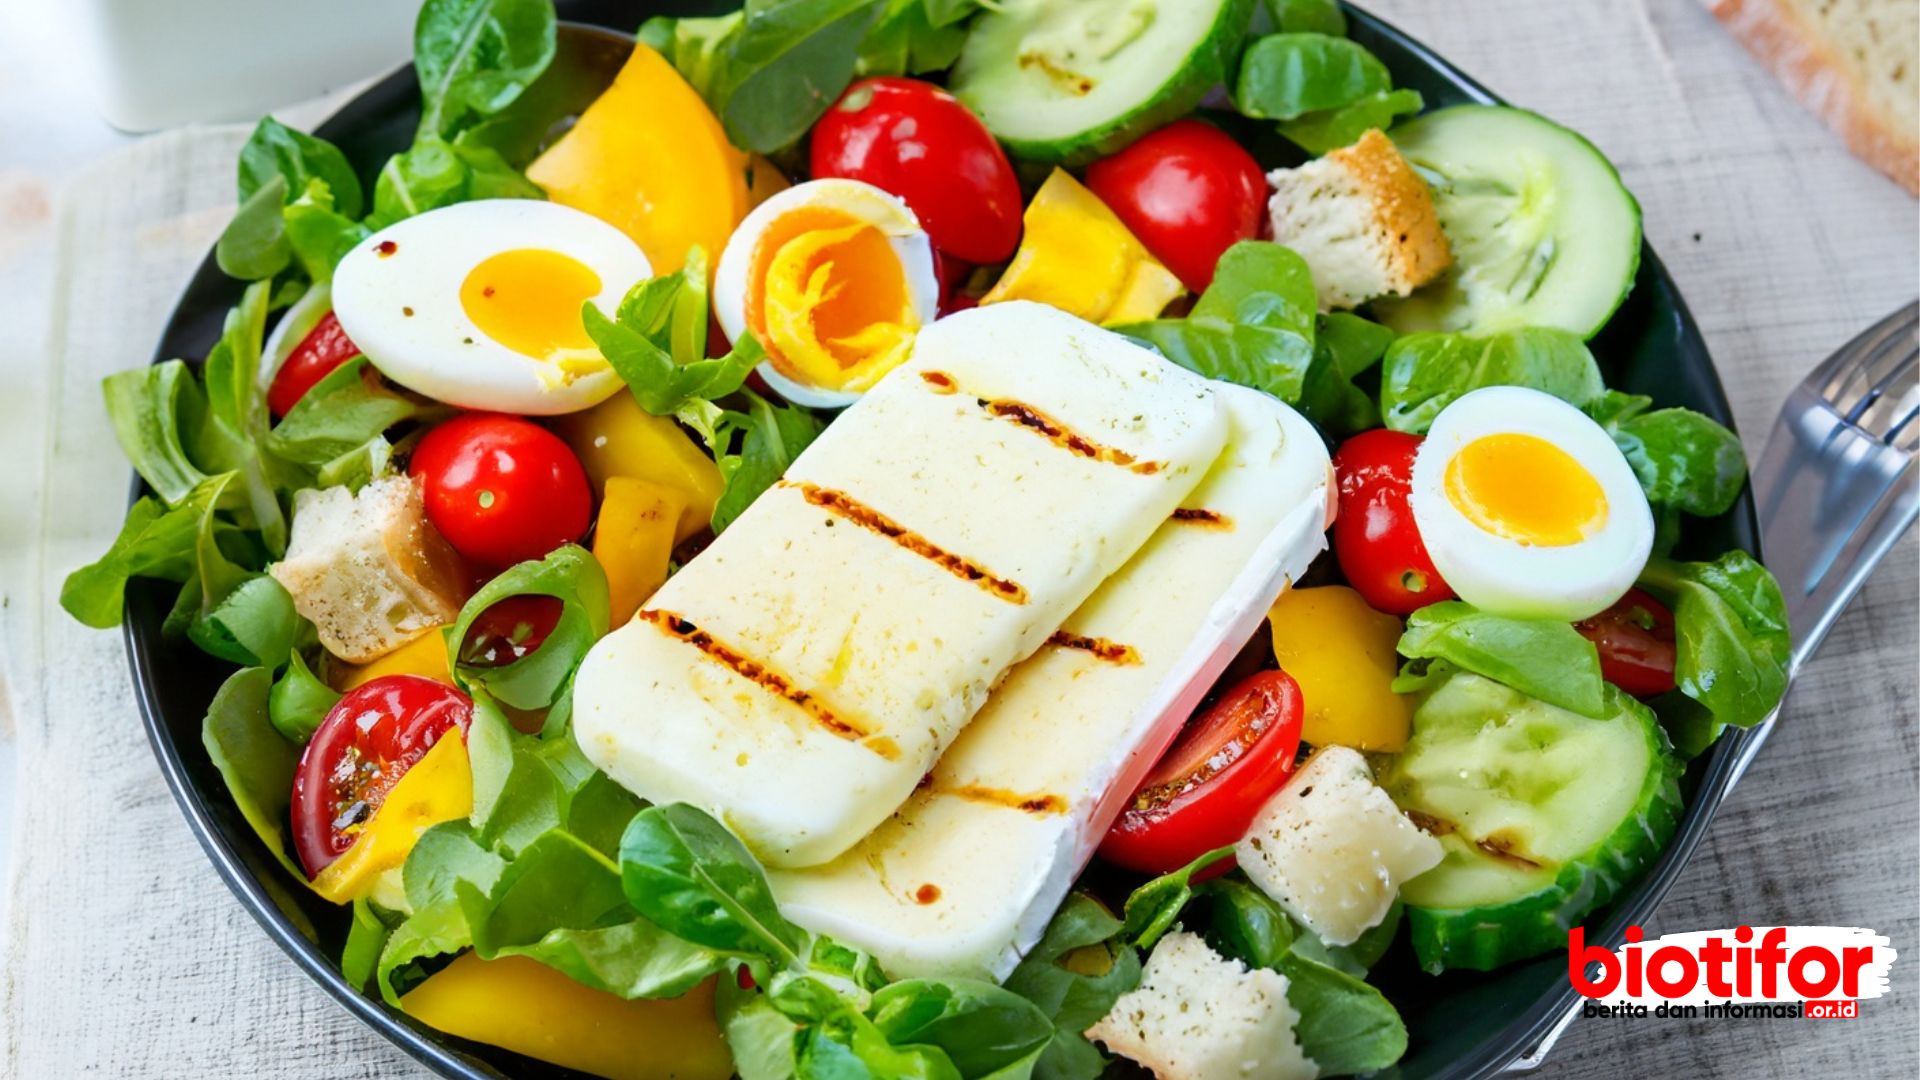 Manfaat Salad Sayur: Menyegarkan Tubuh dan Pikiran